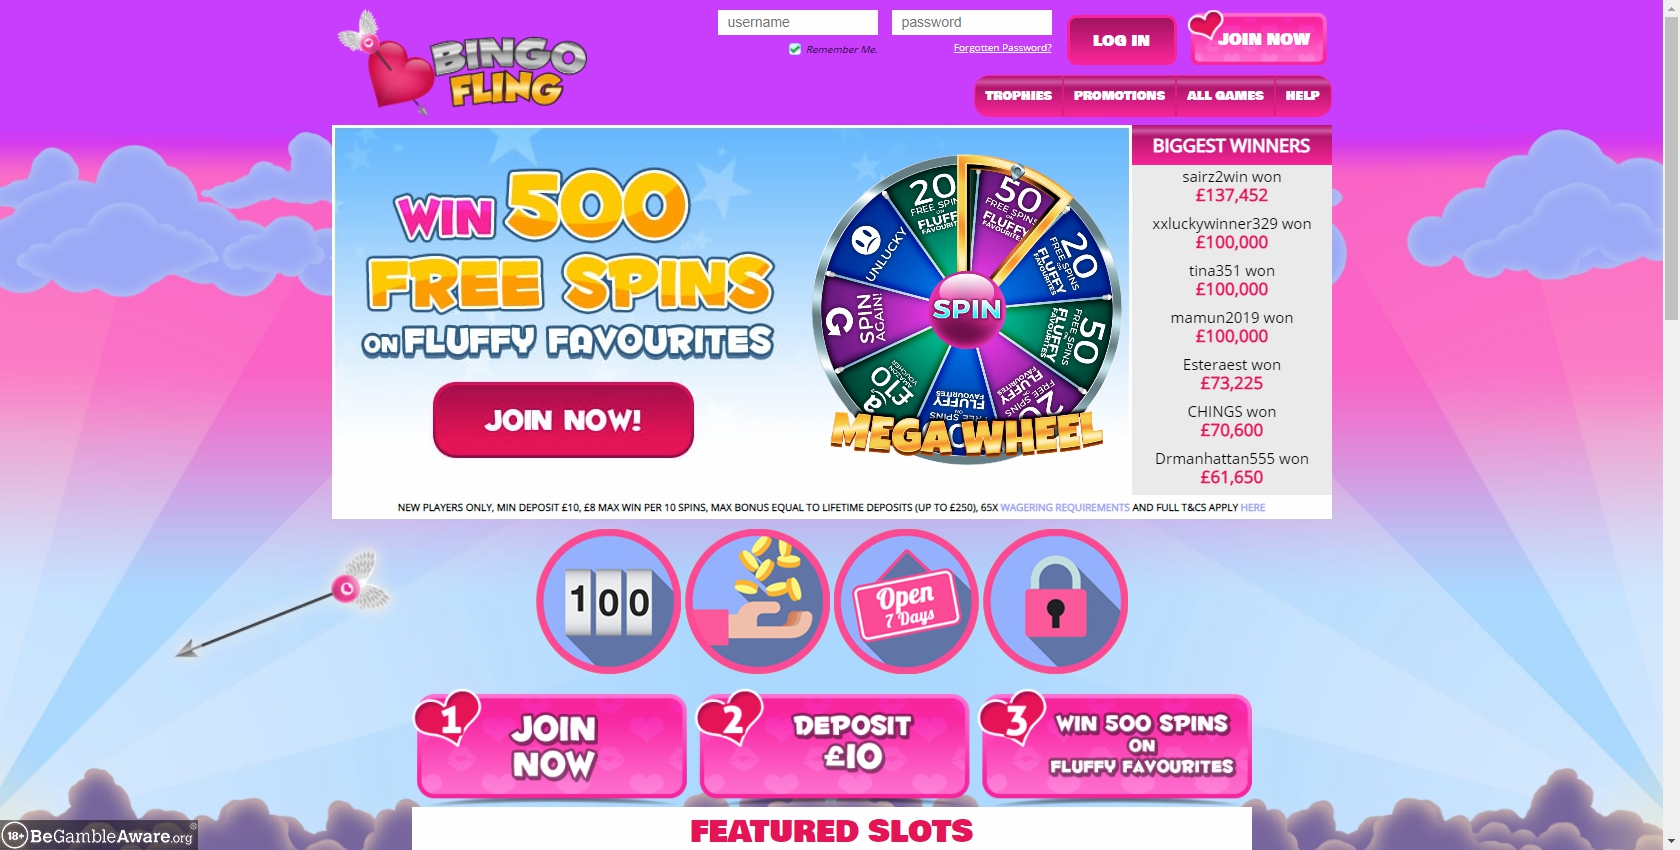 Bingo Fling Casino Review